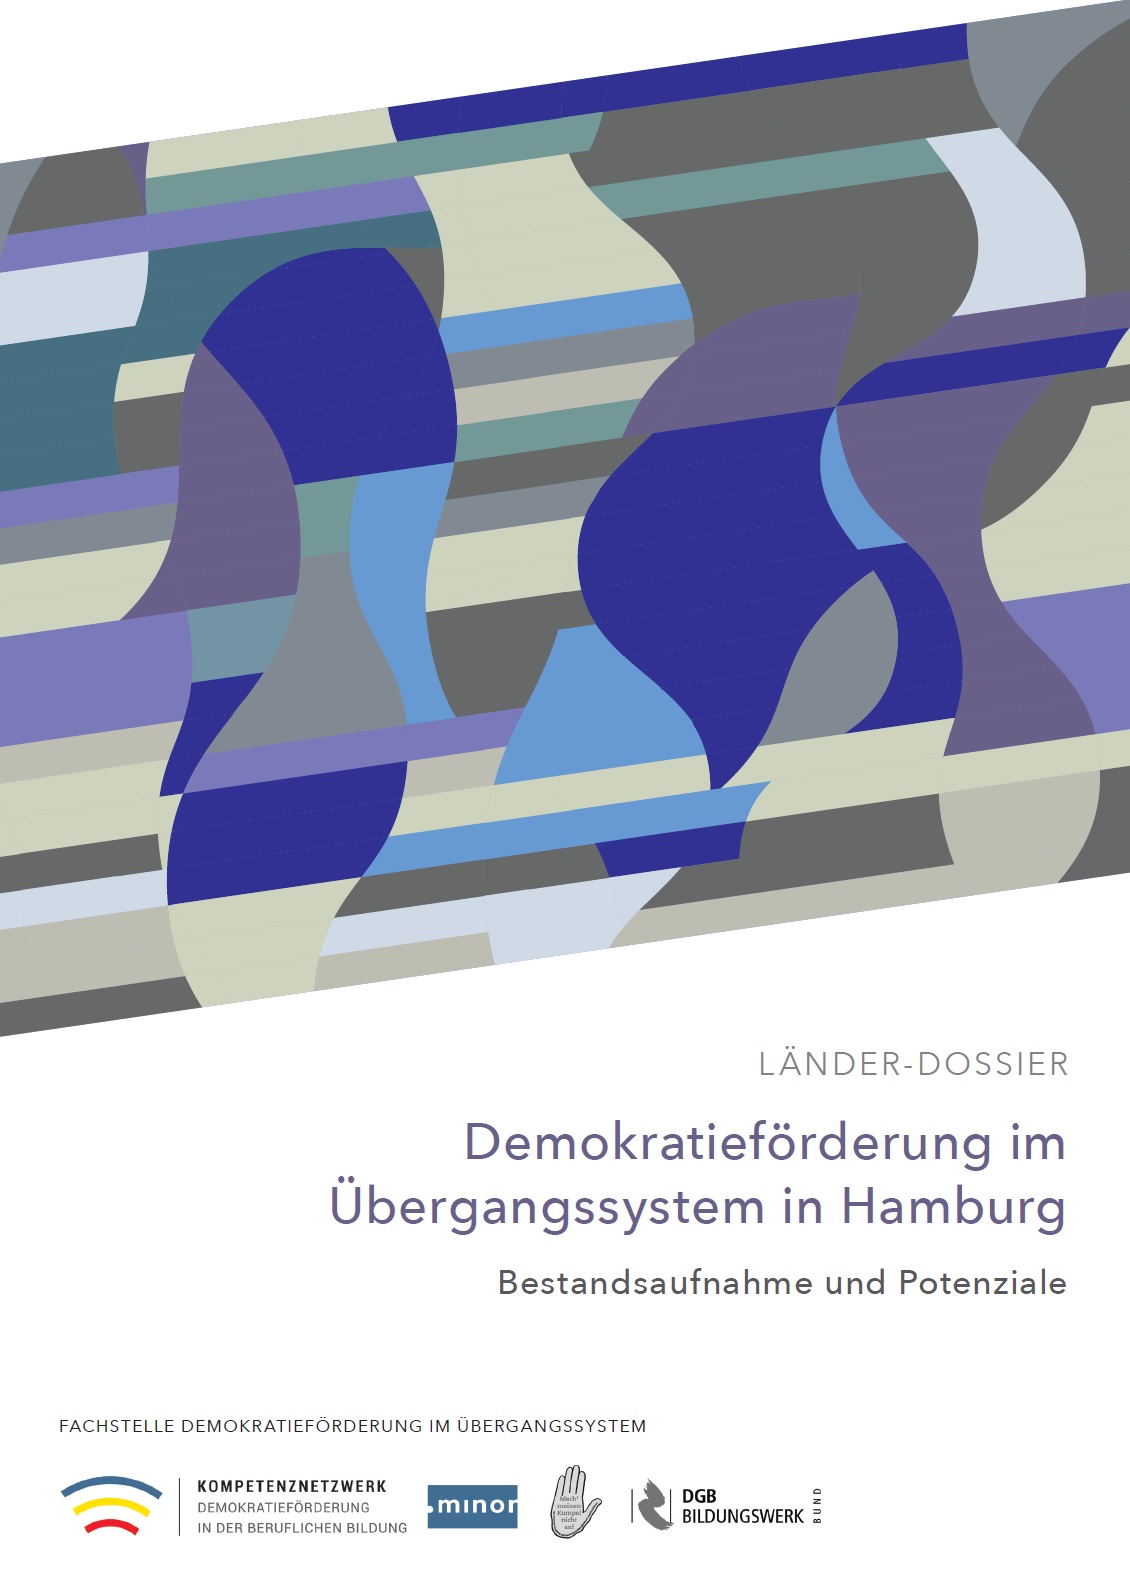 Das Cover zeigt in der oberen Bildhälfte blaue, graue, lila und türkise Formen. Im weißen Hintergrund darunter steht Demokratieförderung im Übergangssystem in Hamburg